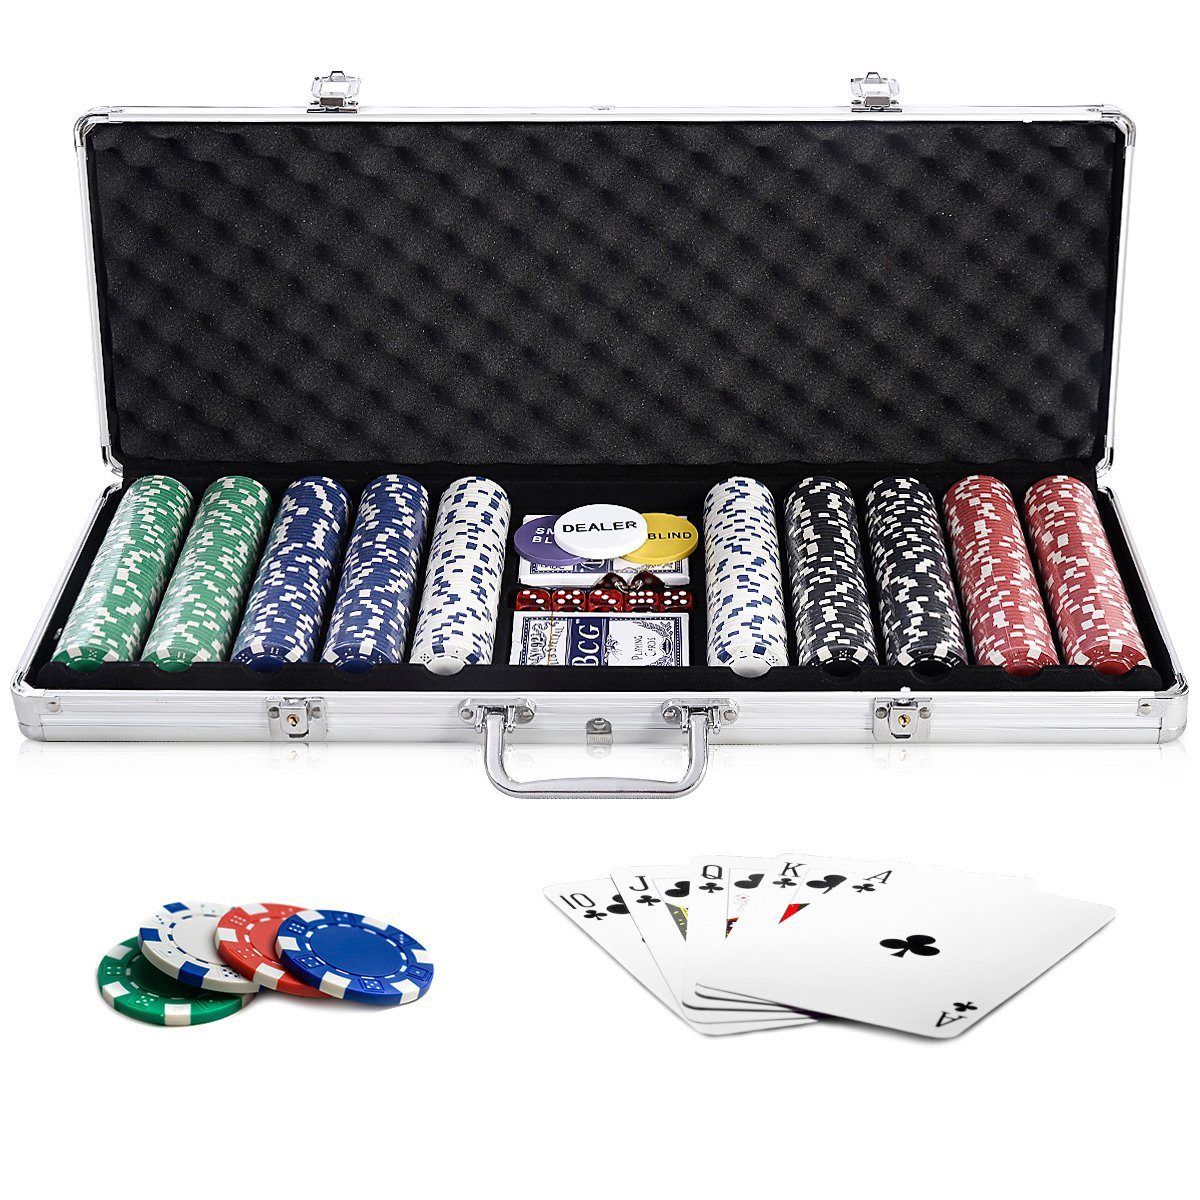 COSTWAY Spiel, 500 Chips Pokerkoffer, Pokerset, mit Tuch